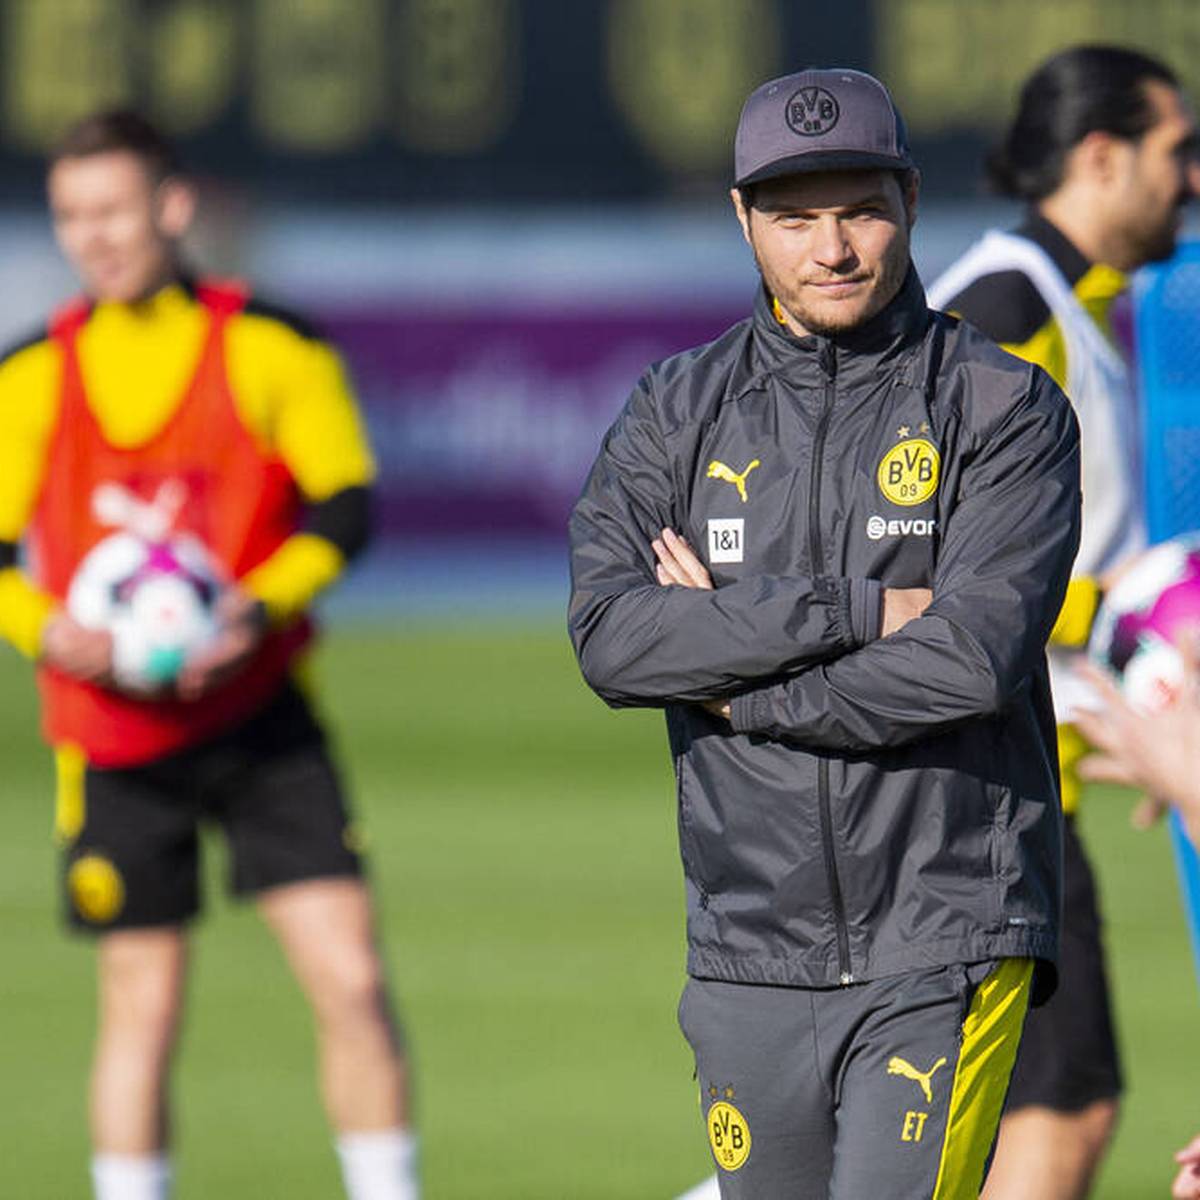 Dortmunds neuer Cheftrainer Edin Terzic läutet die Saison 2022/23 ein und bittet seine Spieler zur Leistungsdiagnostik. Für den BVB soll es ein Start in bessere Zeiten werden, einige Stars fehlen aber noch.